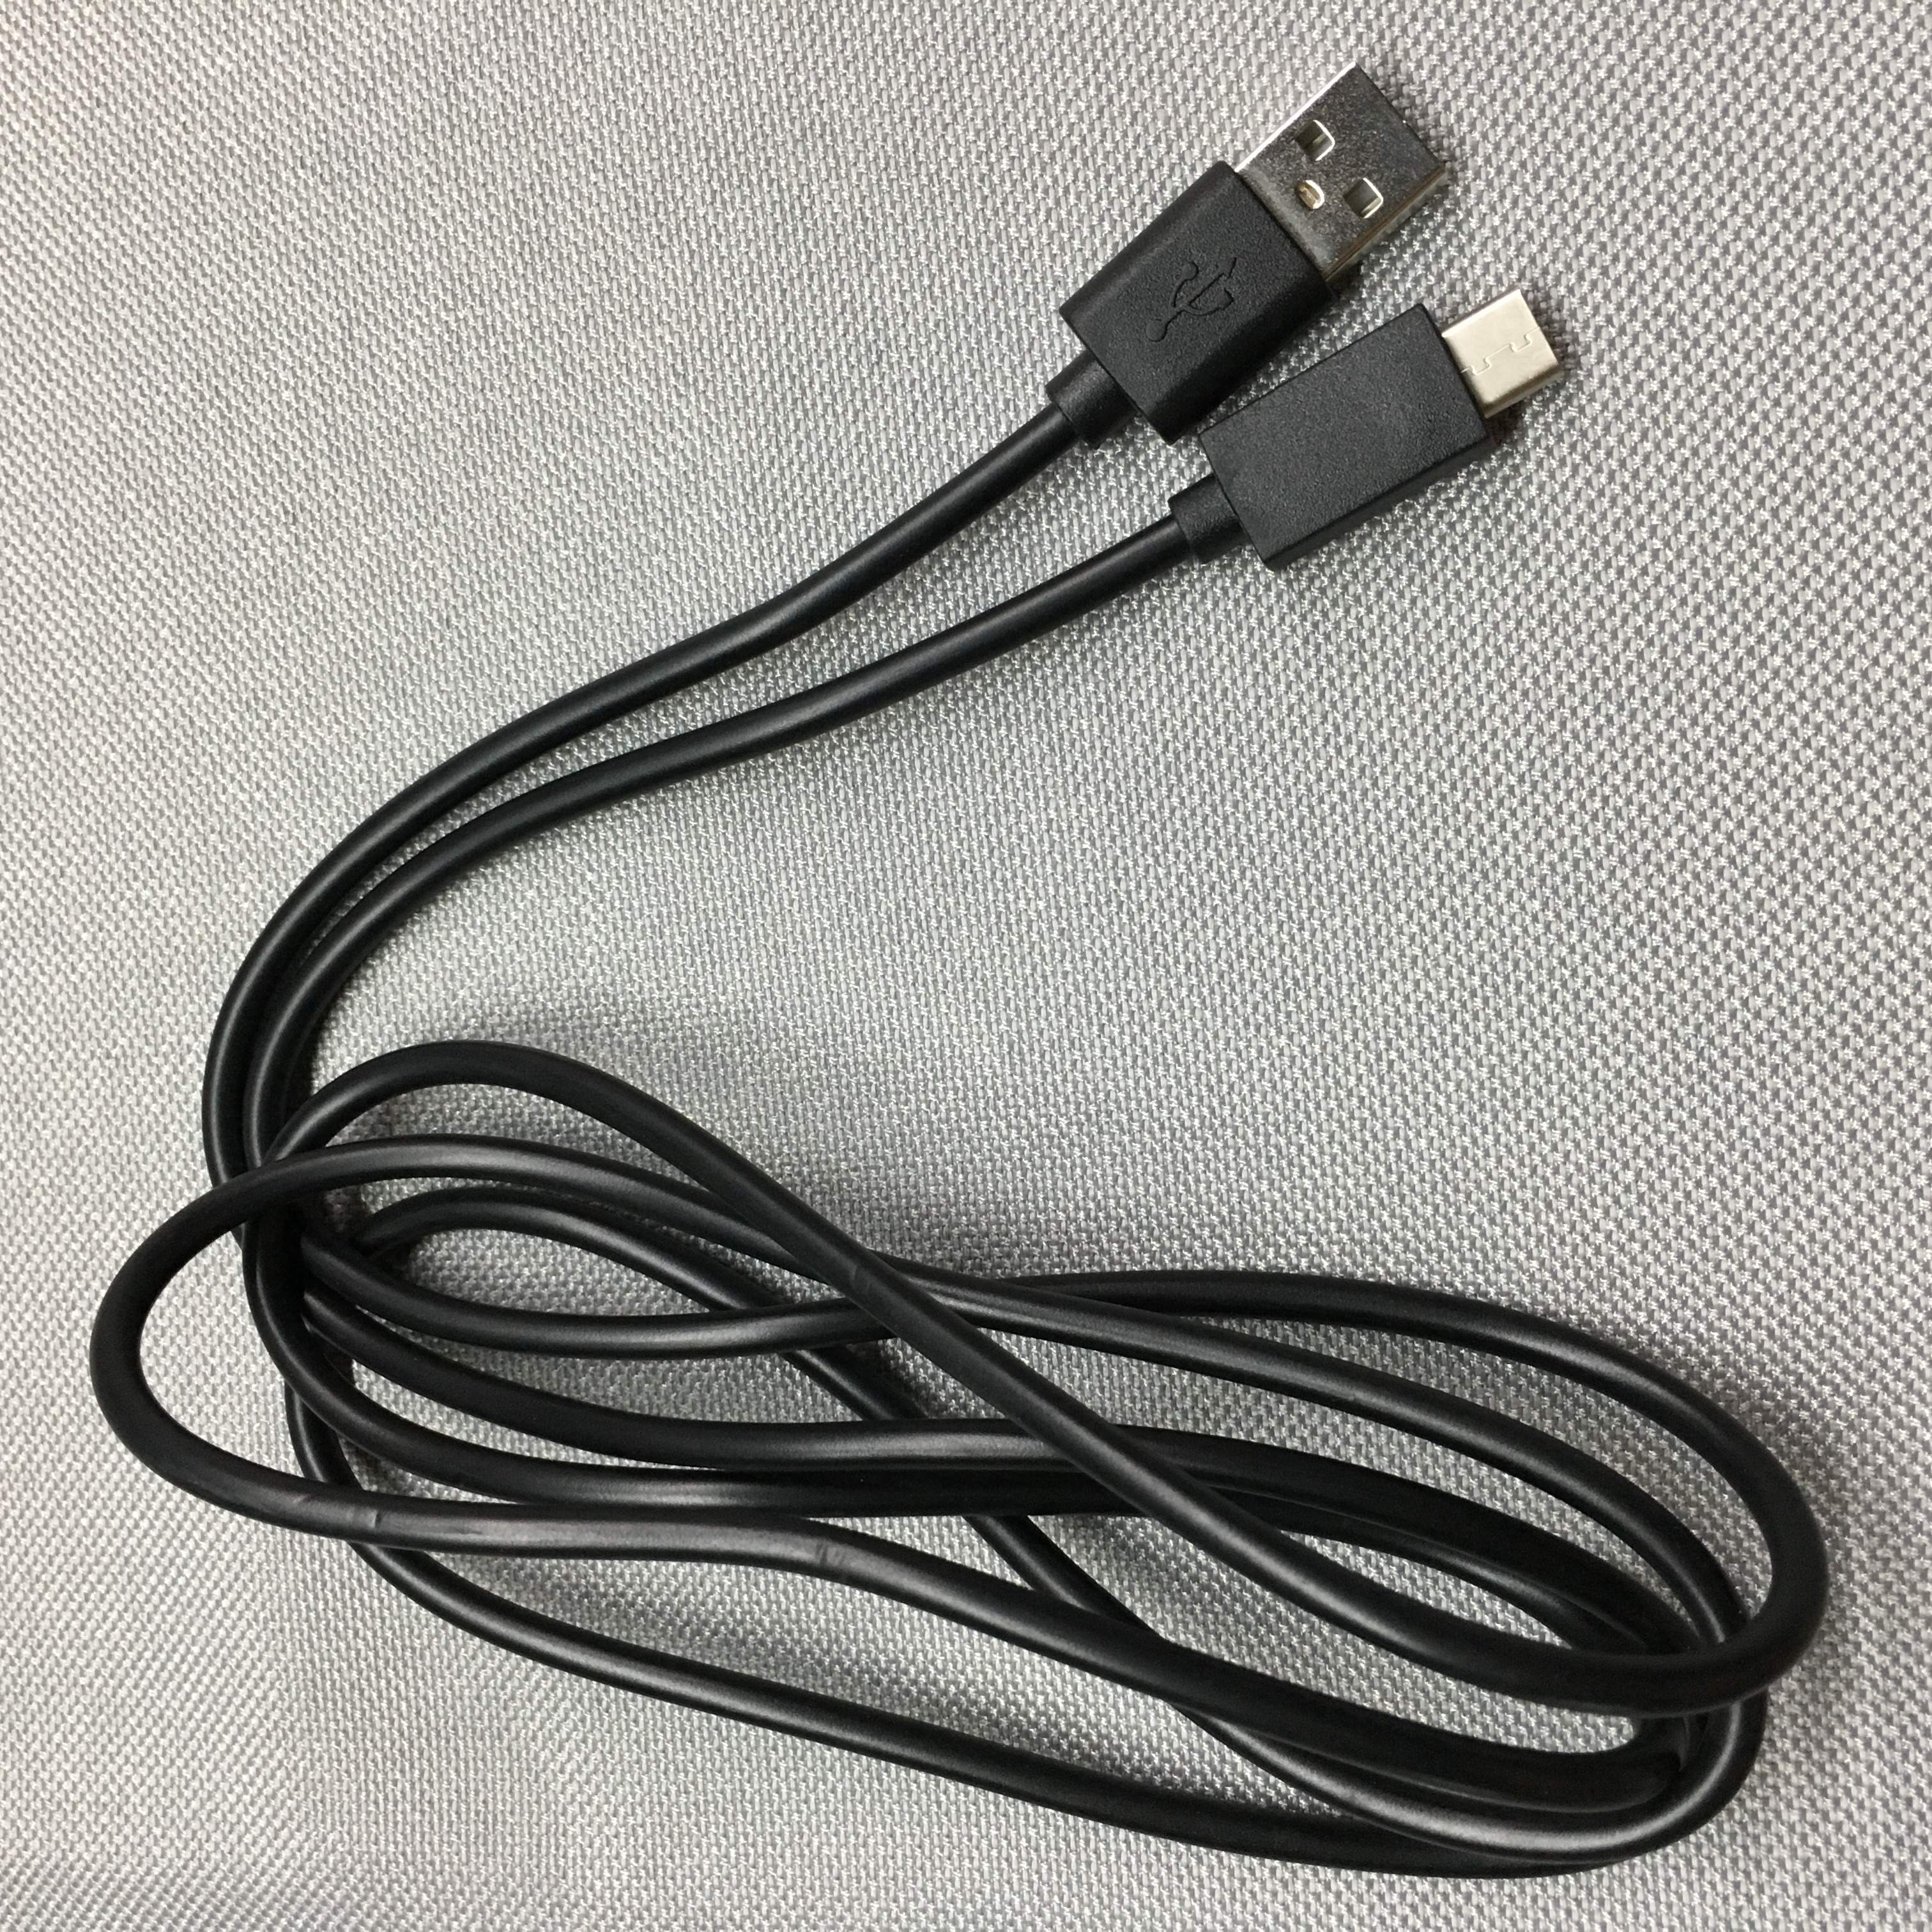 Usb Charger Cable Voeding Data Cord Line Voor Nintend Schakelaar Ns Schakelaar Lite Game Console Type C Snel Opladen usb Draad